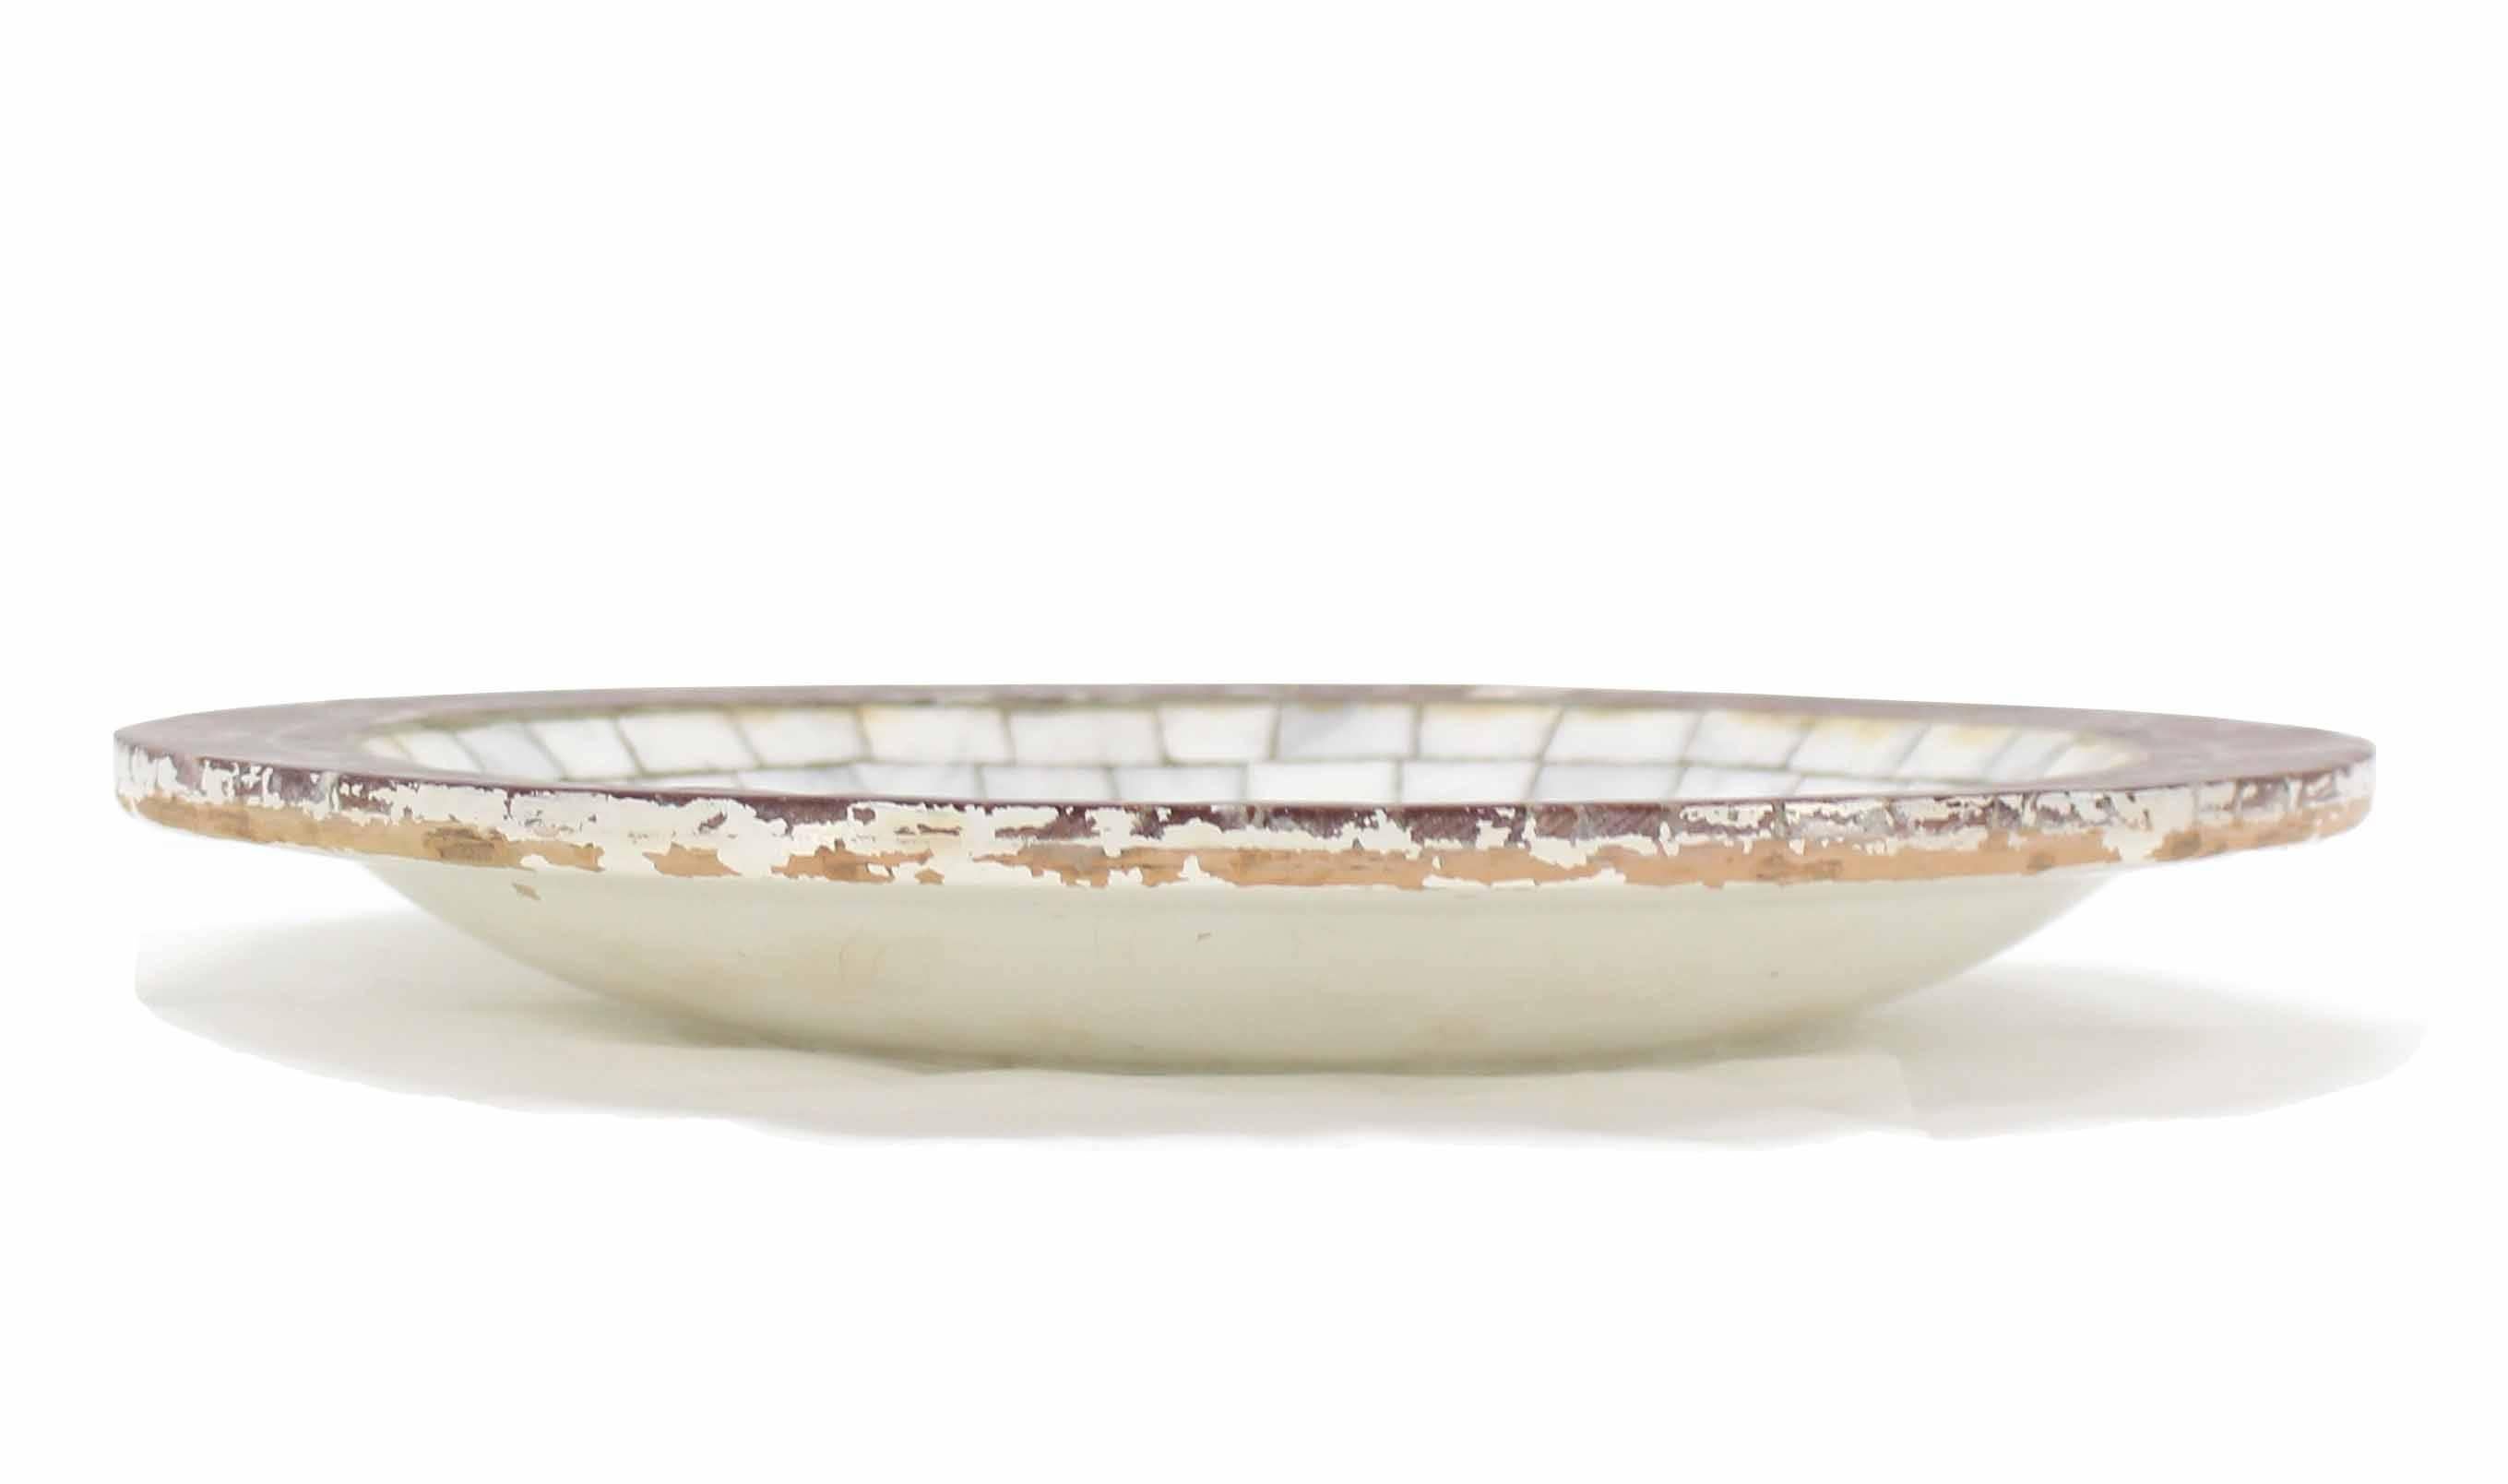 American Handmade Denmark Tile Bowl Charger For Sale